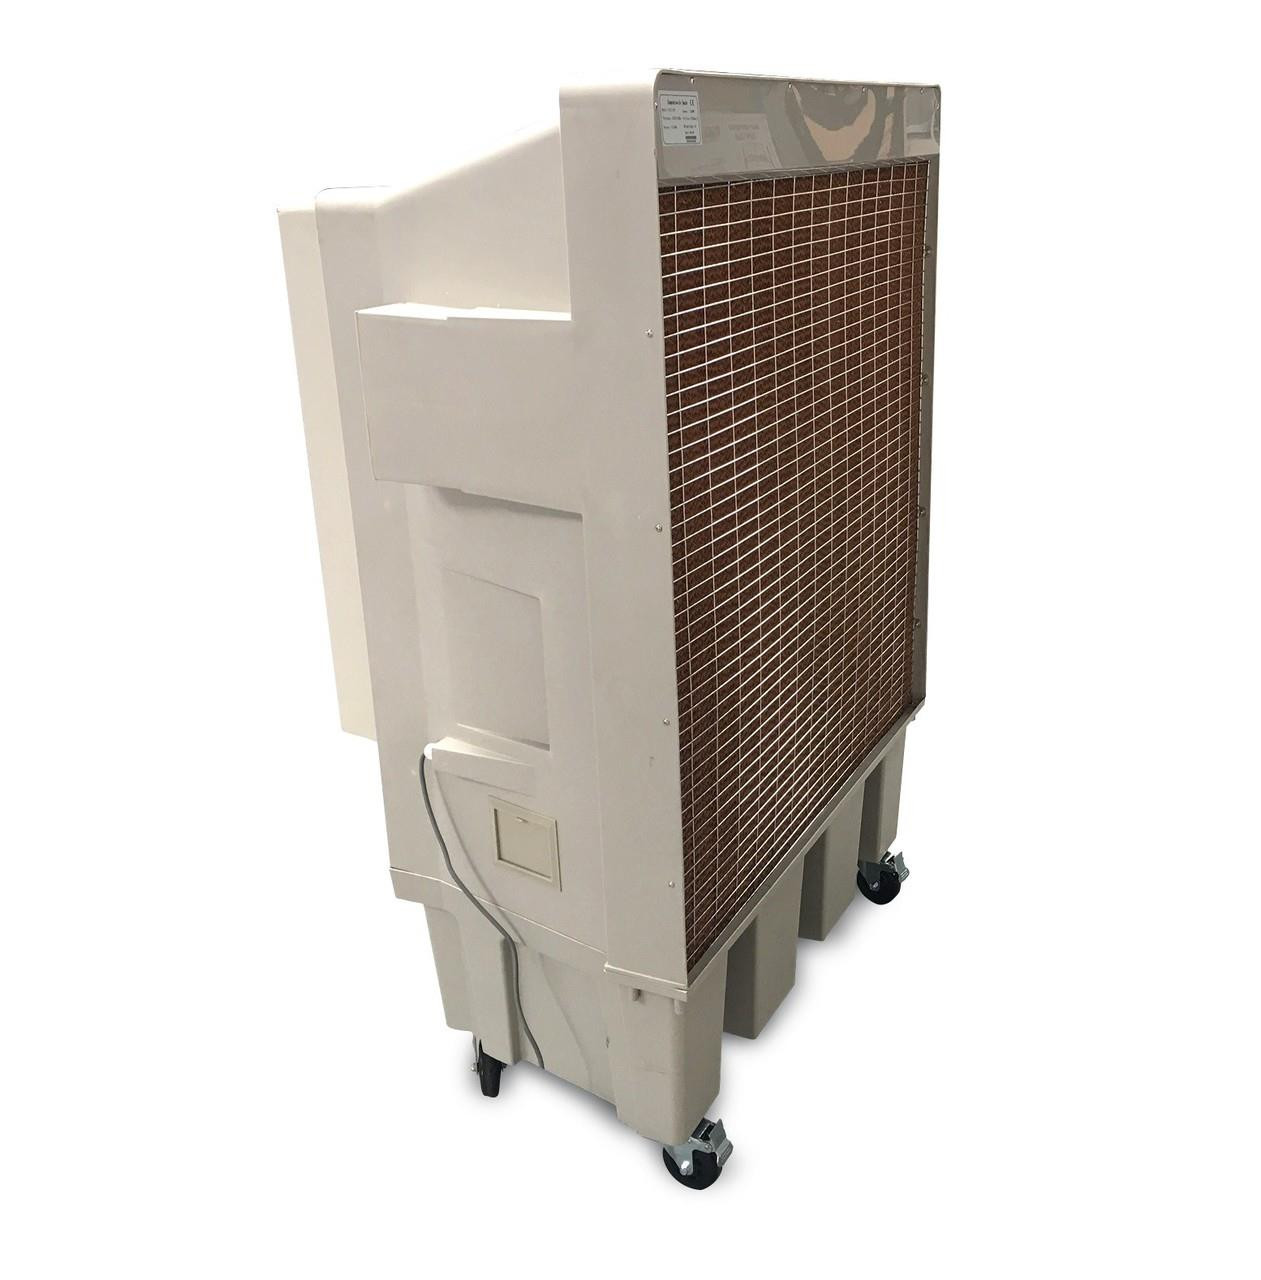 Medium Mobile Evaporative Air Conditioner up to 200m2 - SLIM DESIGN